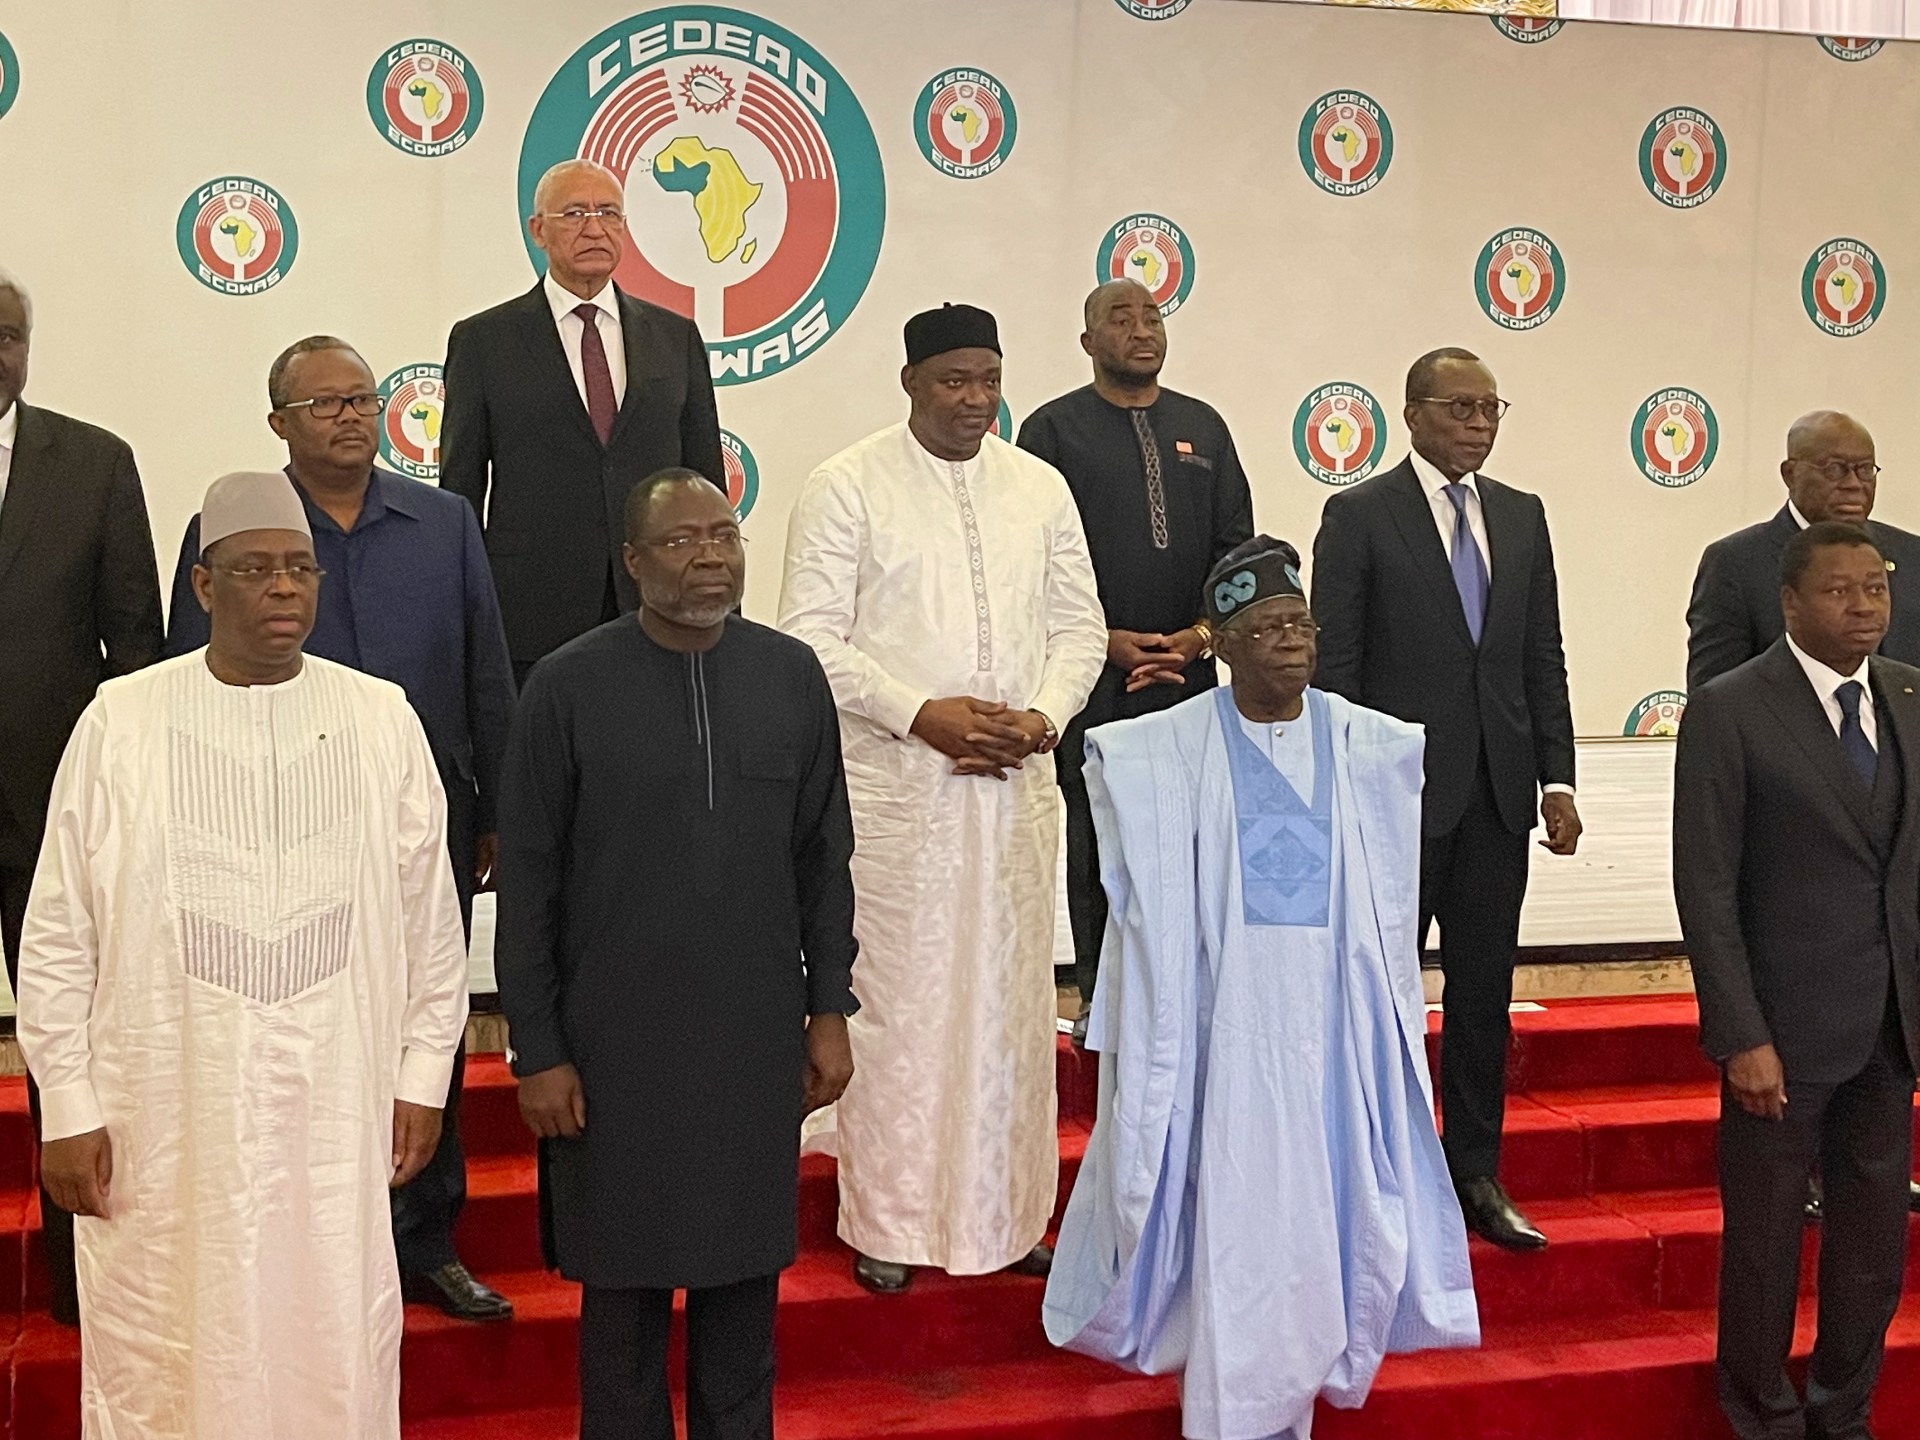 Ujian Keinginan: Bisakah ECOWAS Membalikkan Kudeta Niger dan Membentuk Orde Baru?  |  Karakteristik